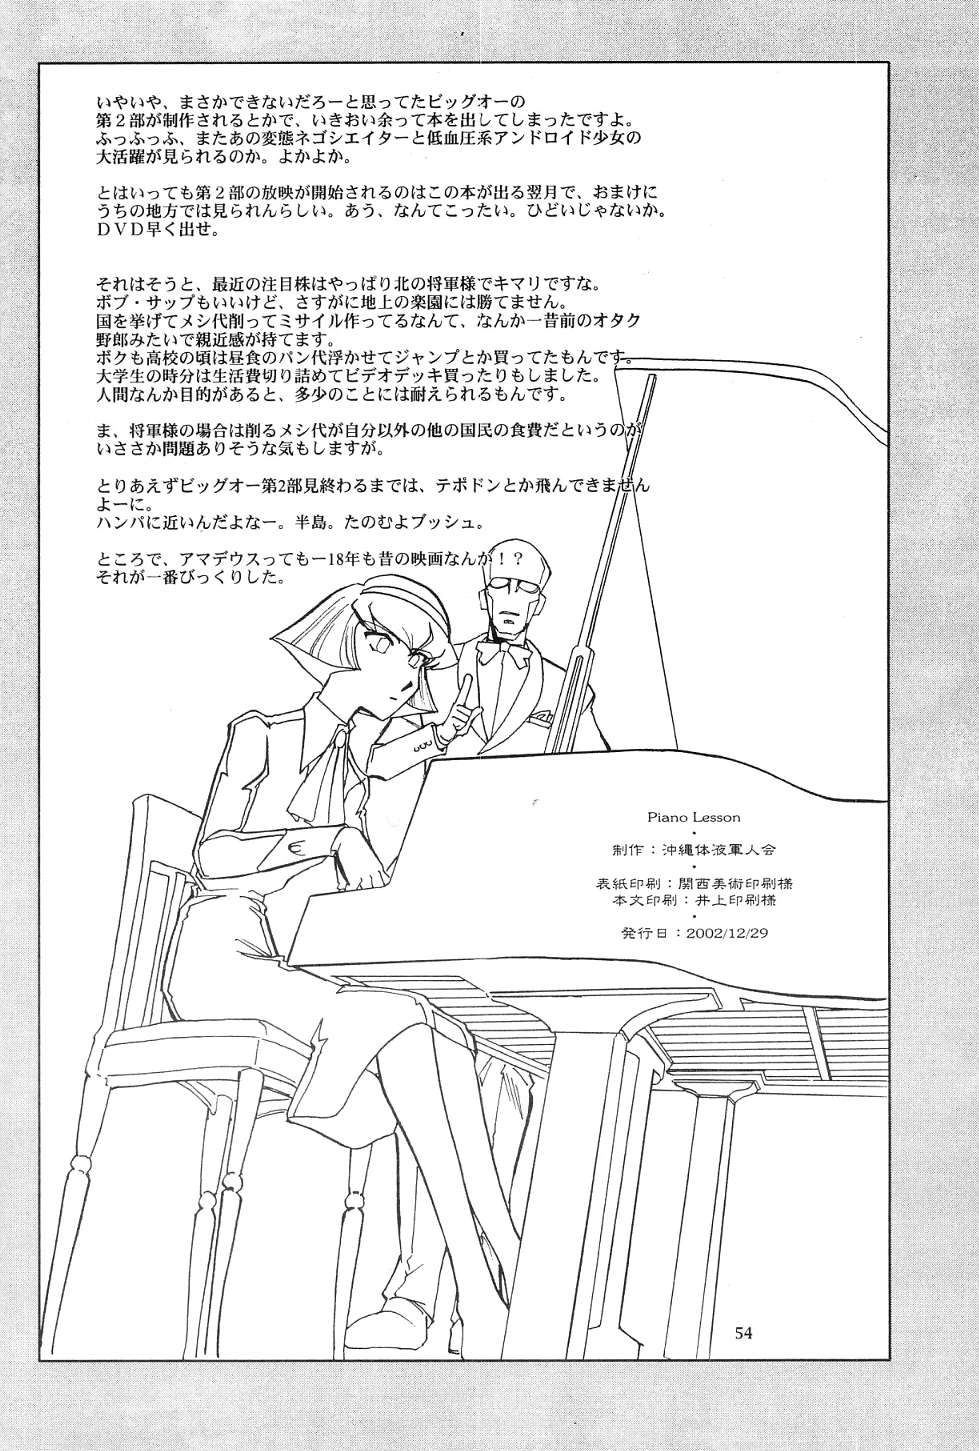 (C63) [沖縄体液軍人会 (安永航一郎)] Piano Lesson (THEビッグオー)